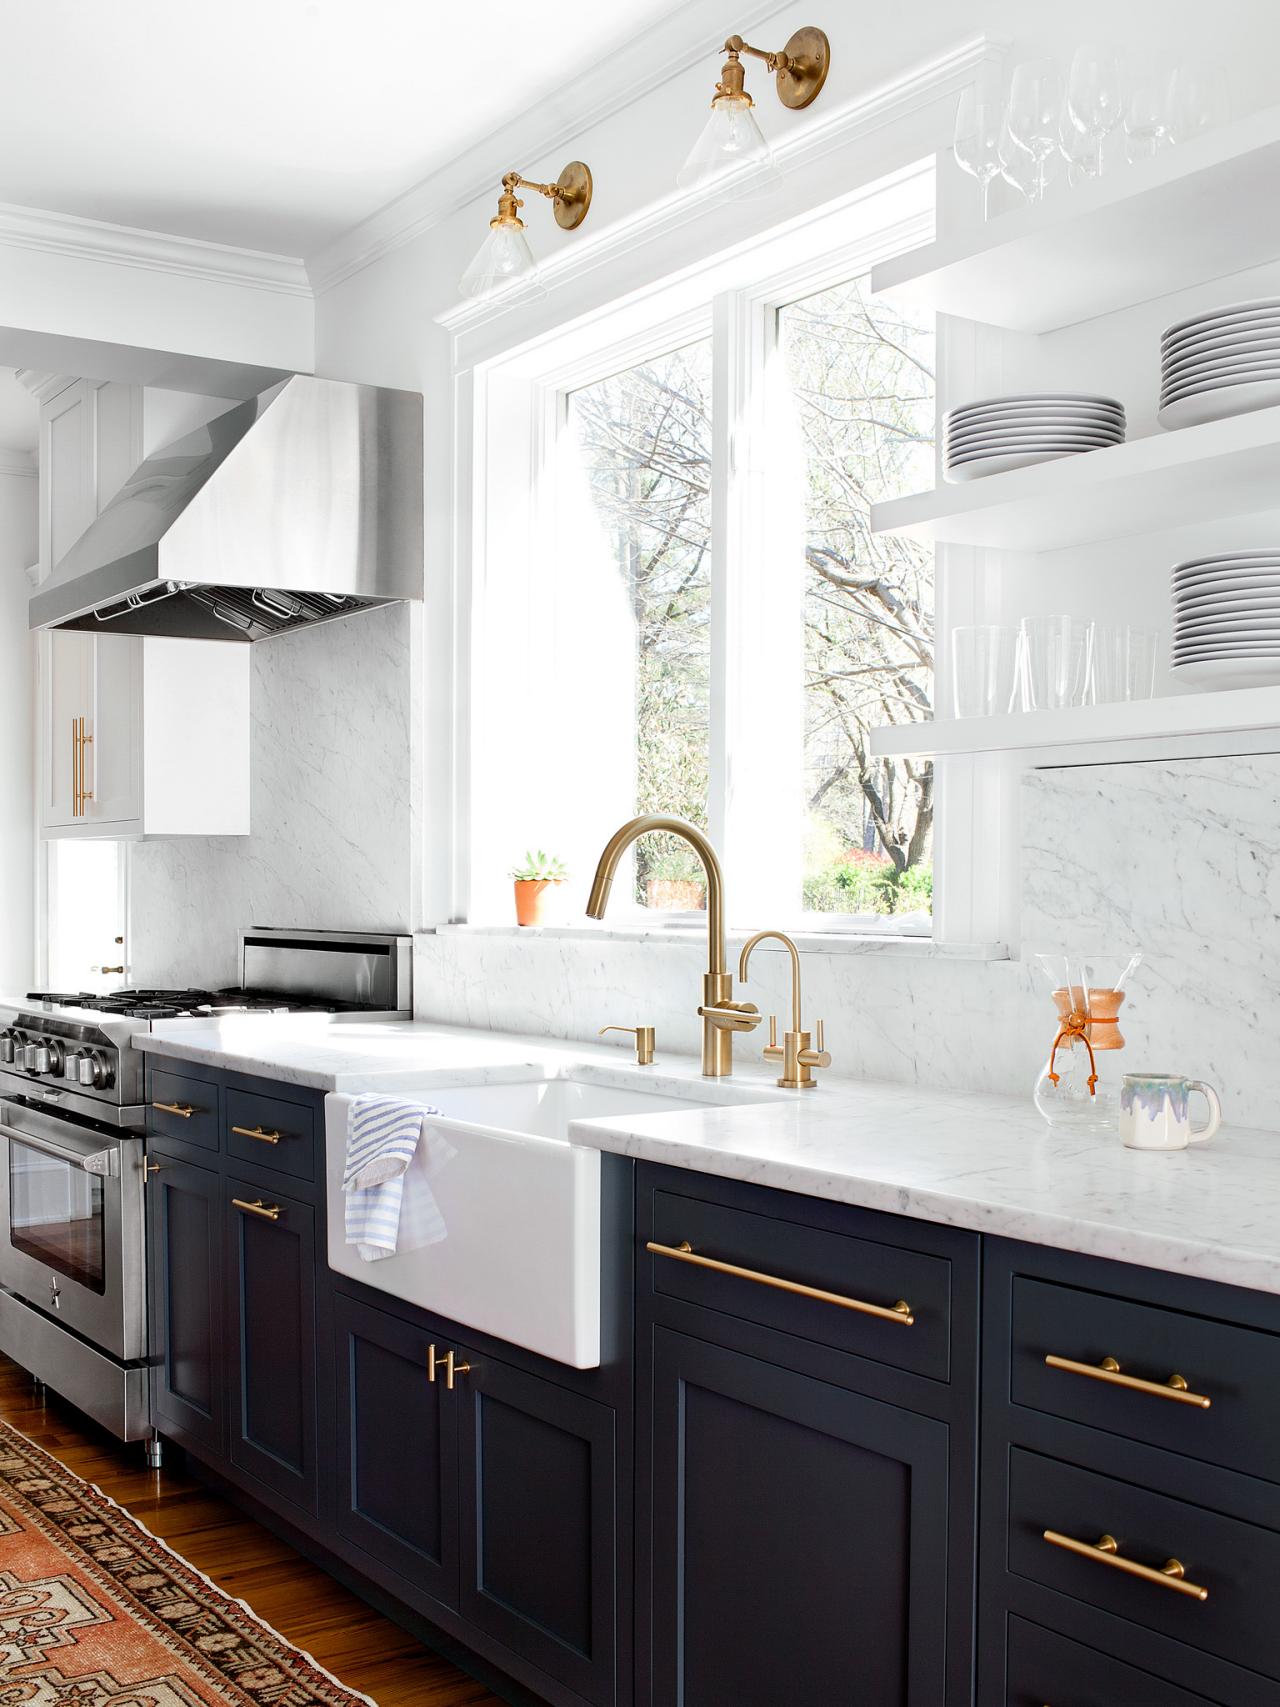 Gorgeous Kitchen Cabinet Hardware Ideas, White Kitchen Cabinet Knob Ideas